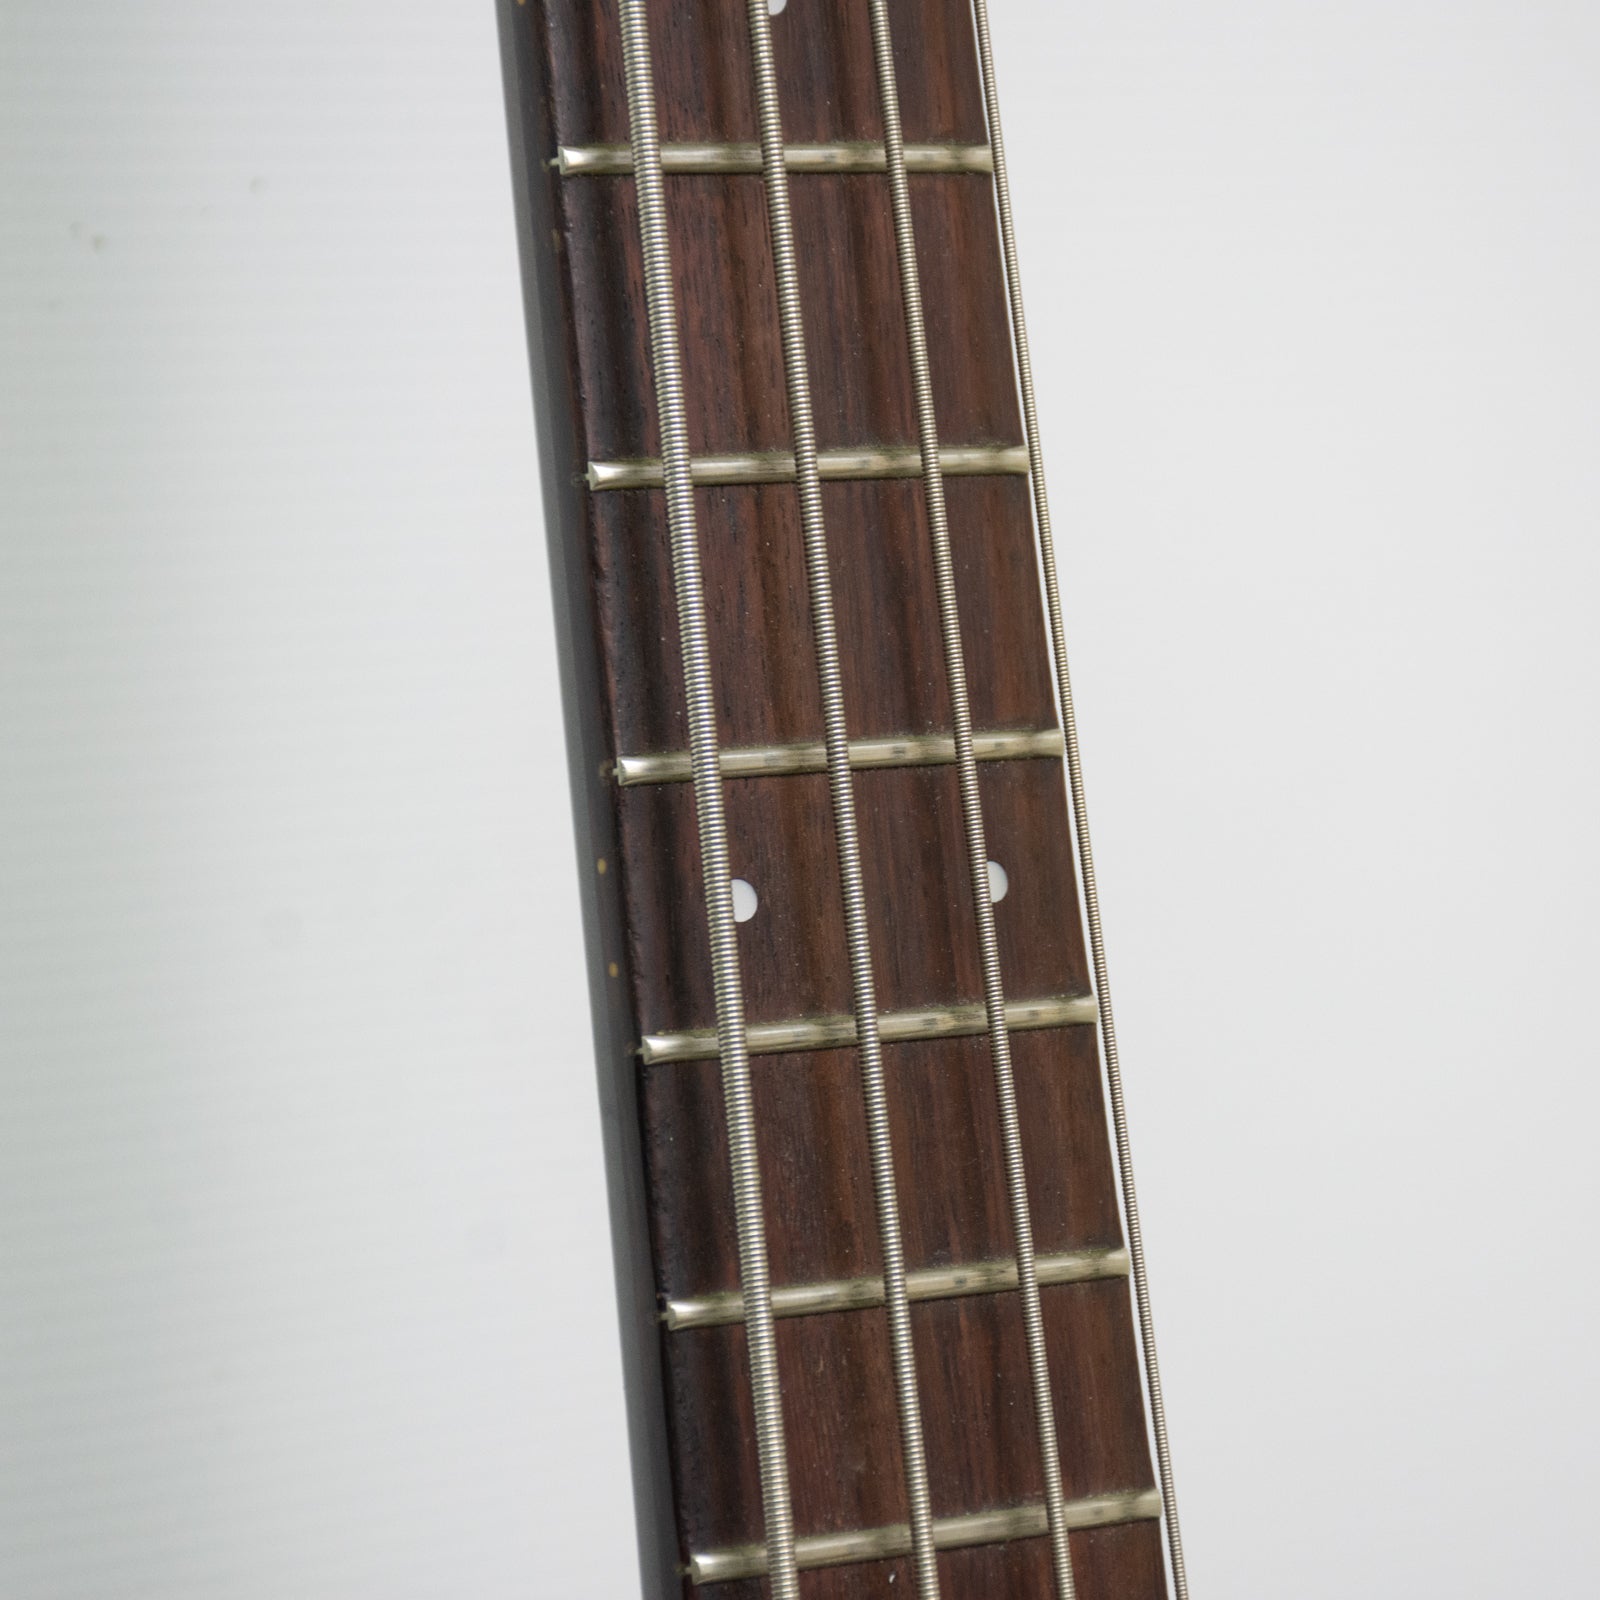 Ibanez SDGR SR800LE 4-String Bass Guitar - 1993 - Vintage